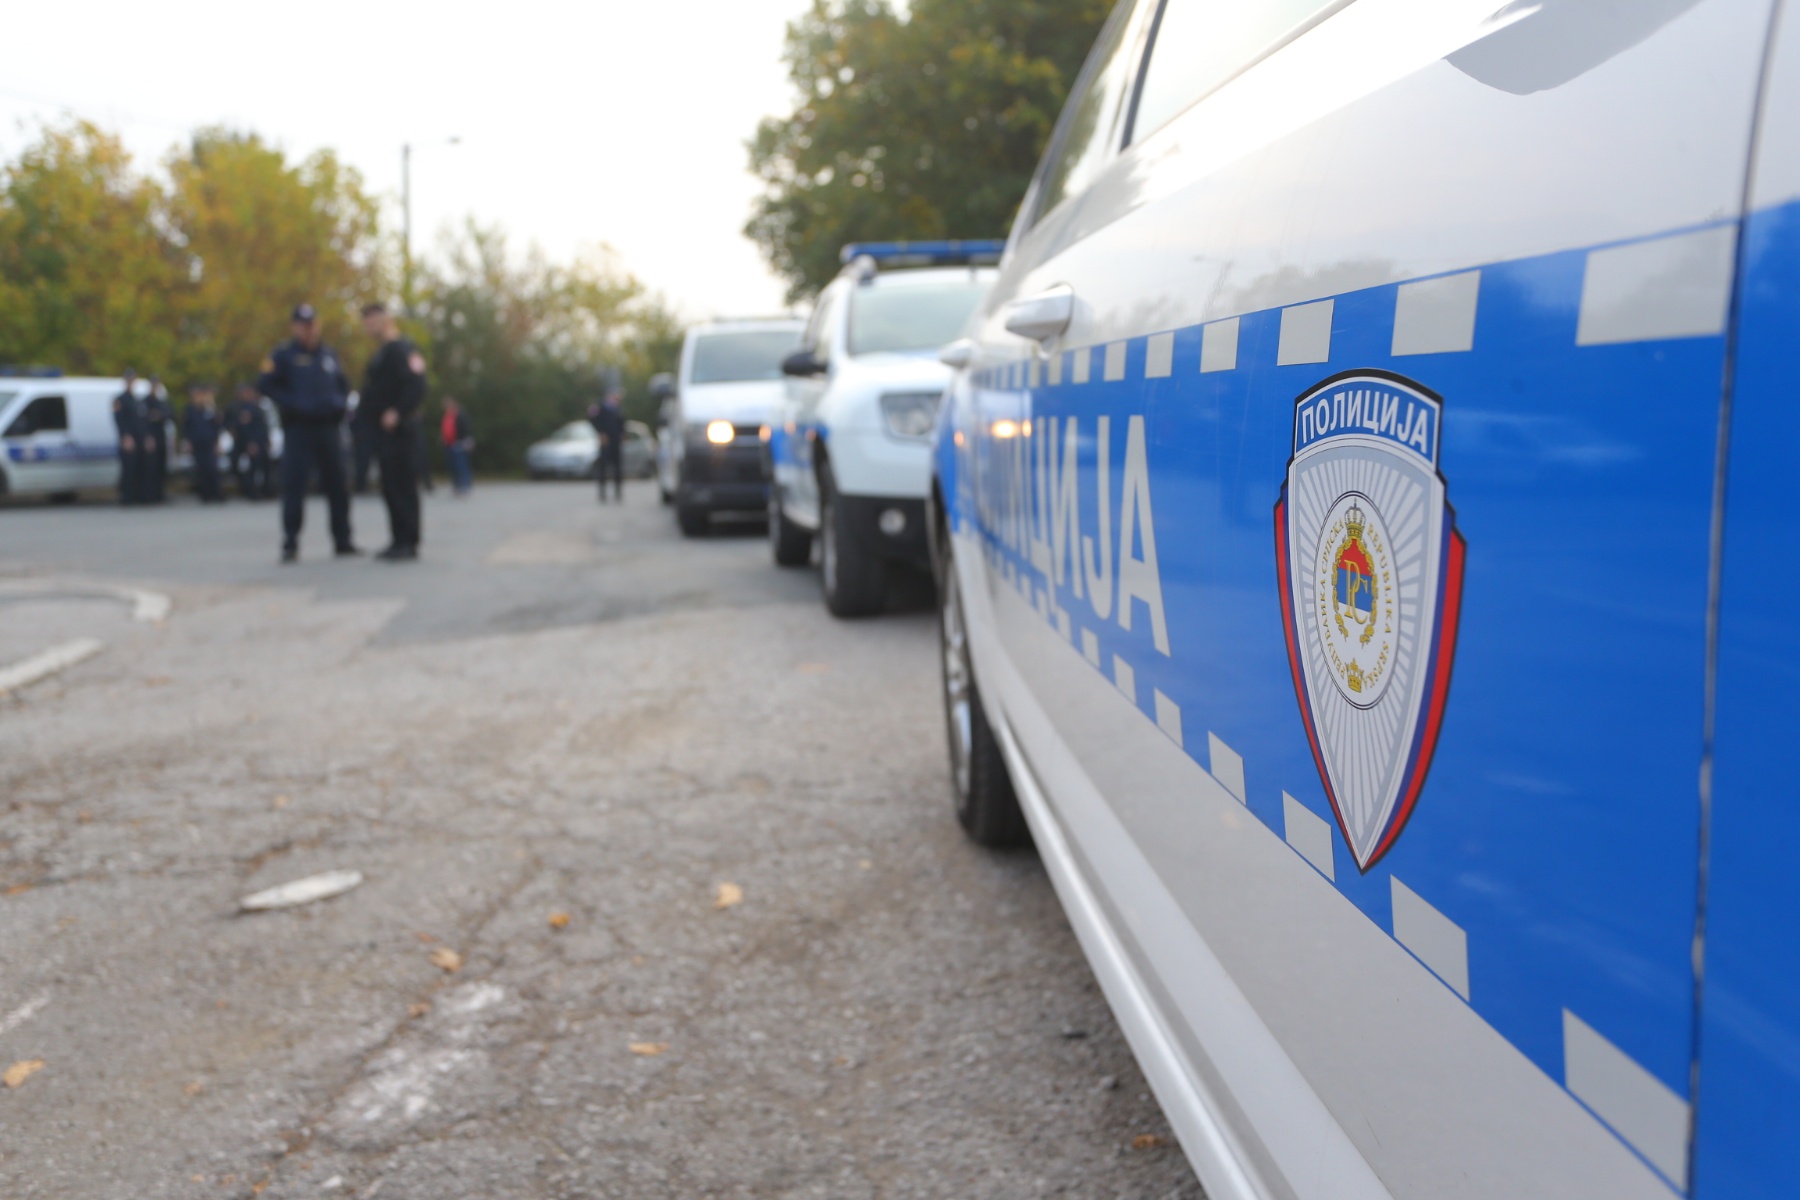 Opsadno stanje u Čelincu: Policija traga za osumnjičenim koji je počinio teške krađe na području Banjaluke